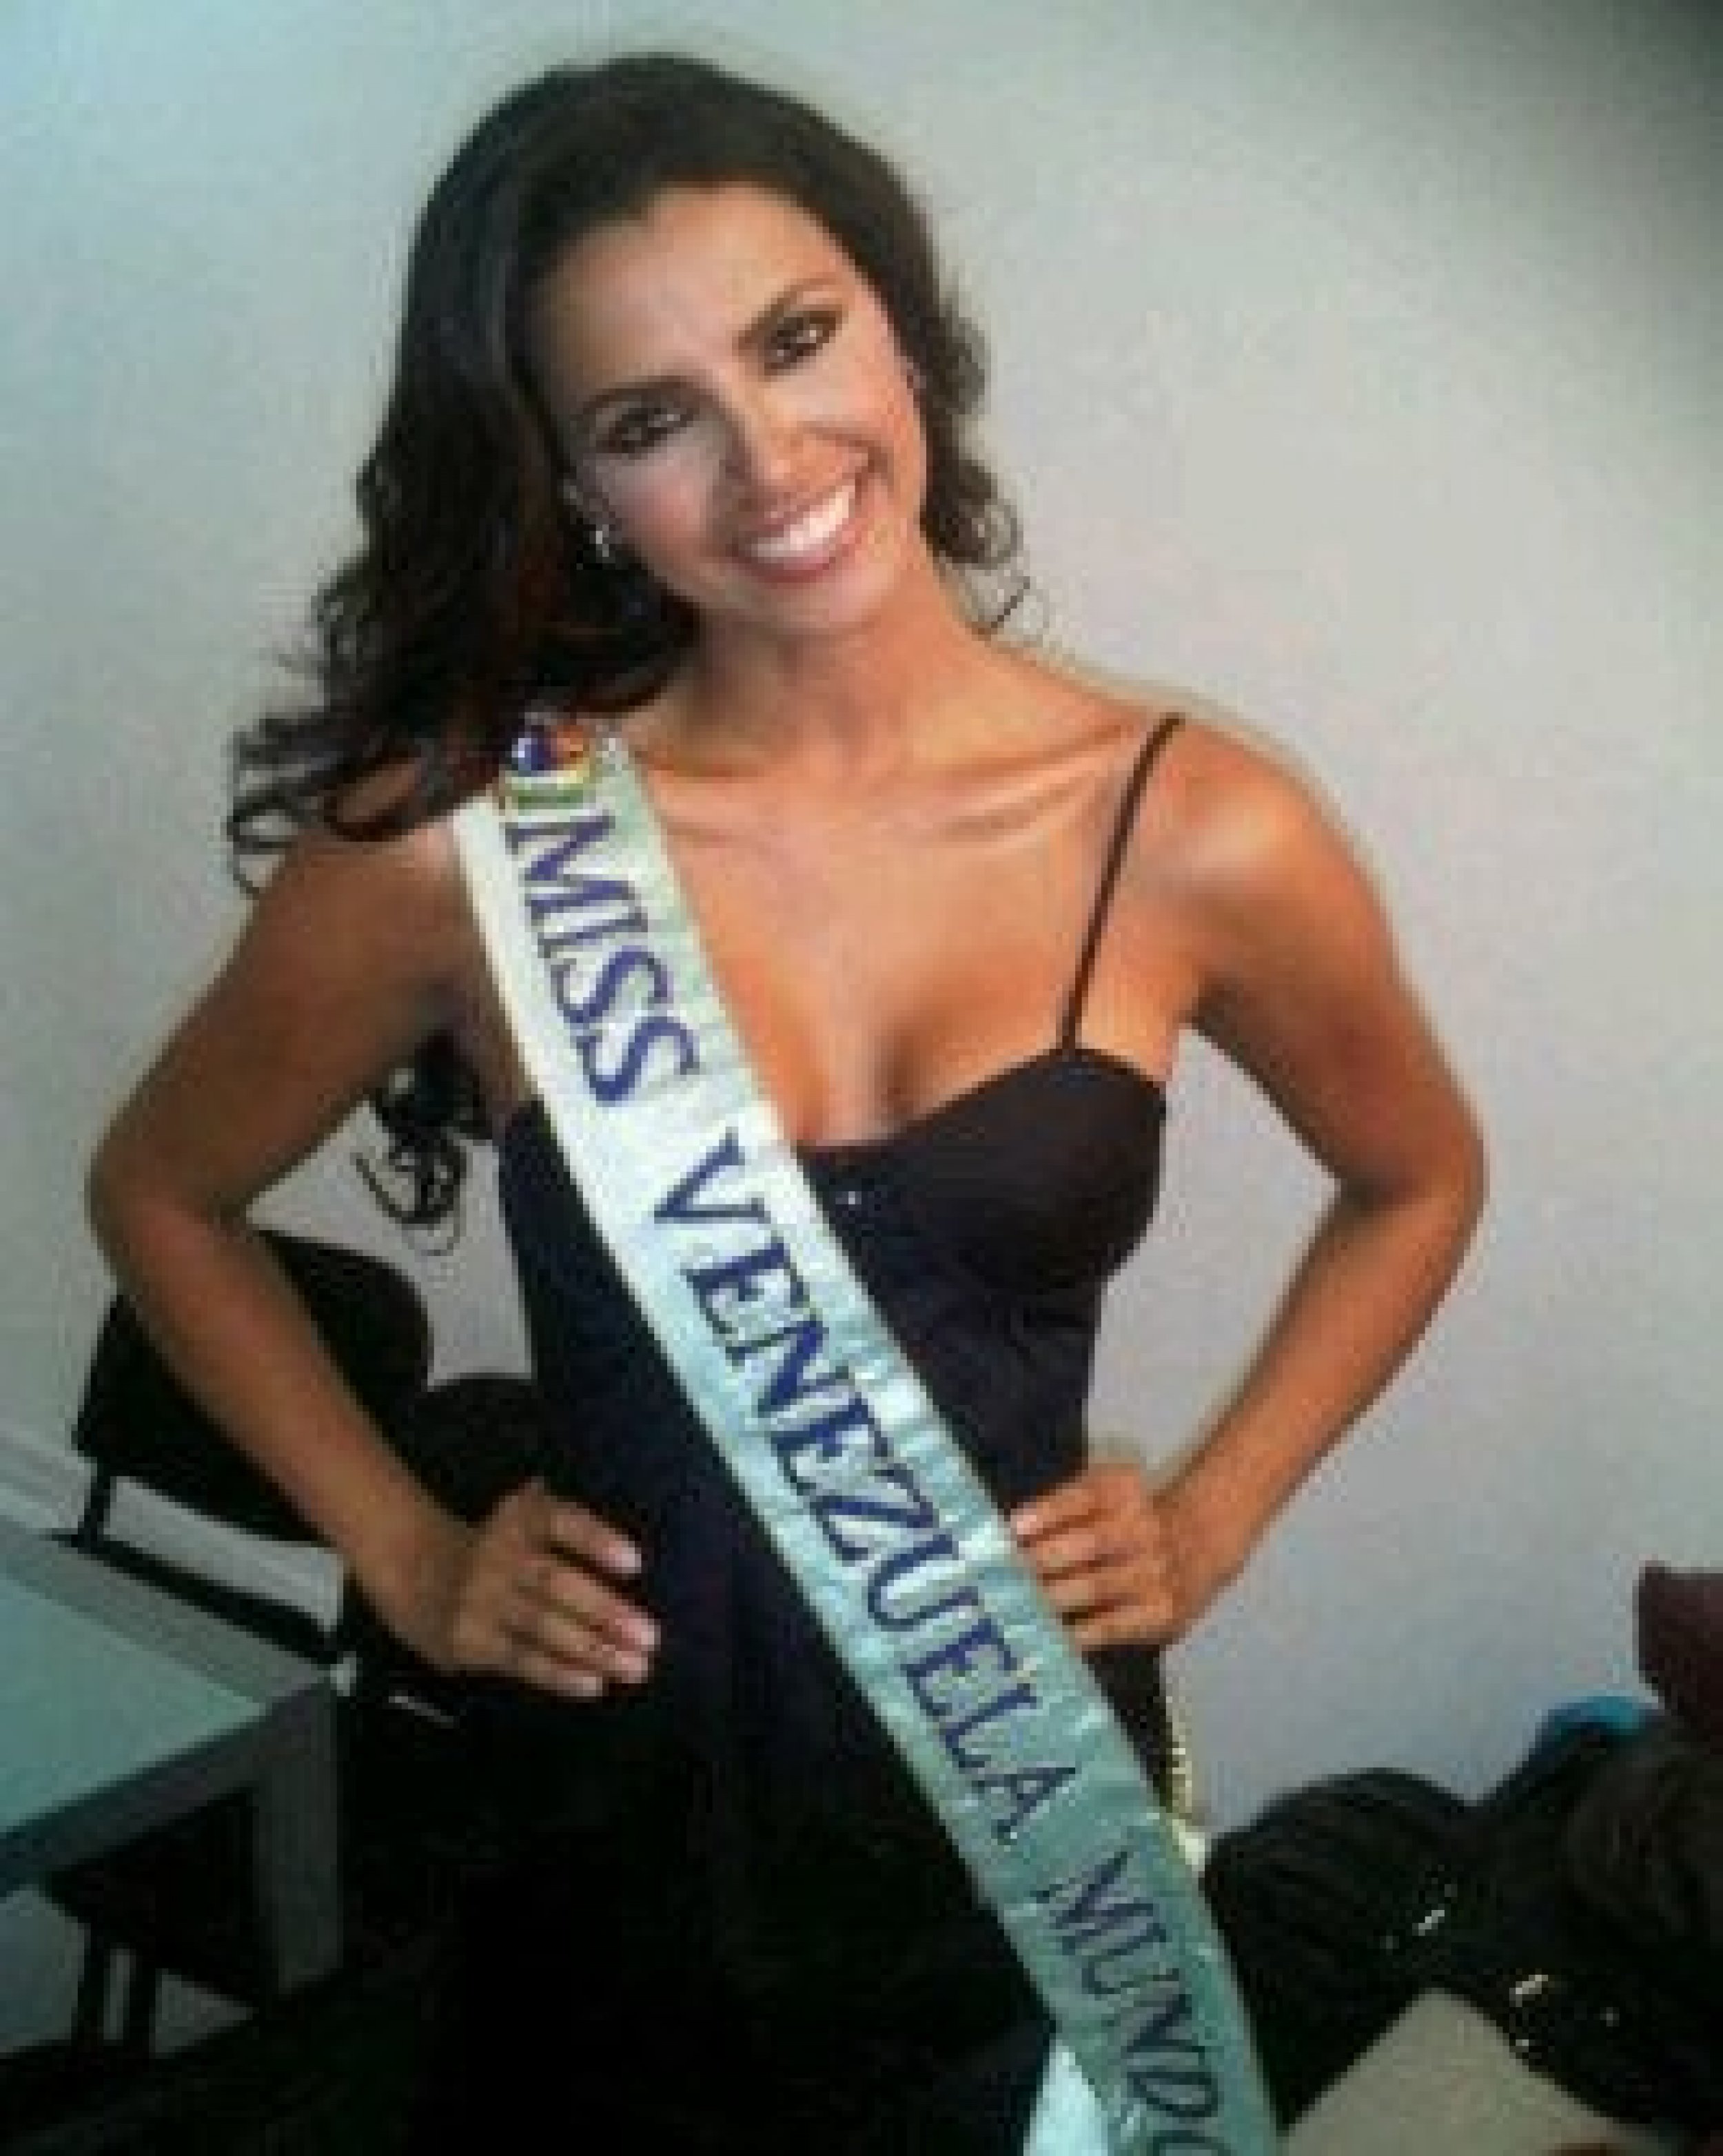 Miss Venezuela, Ivian Sarcos wins the Miss World 2011 Crown